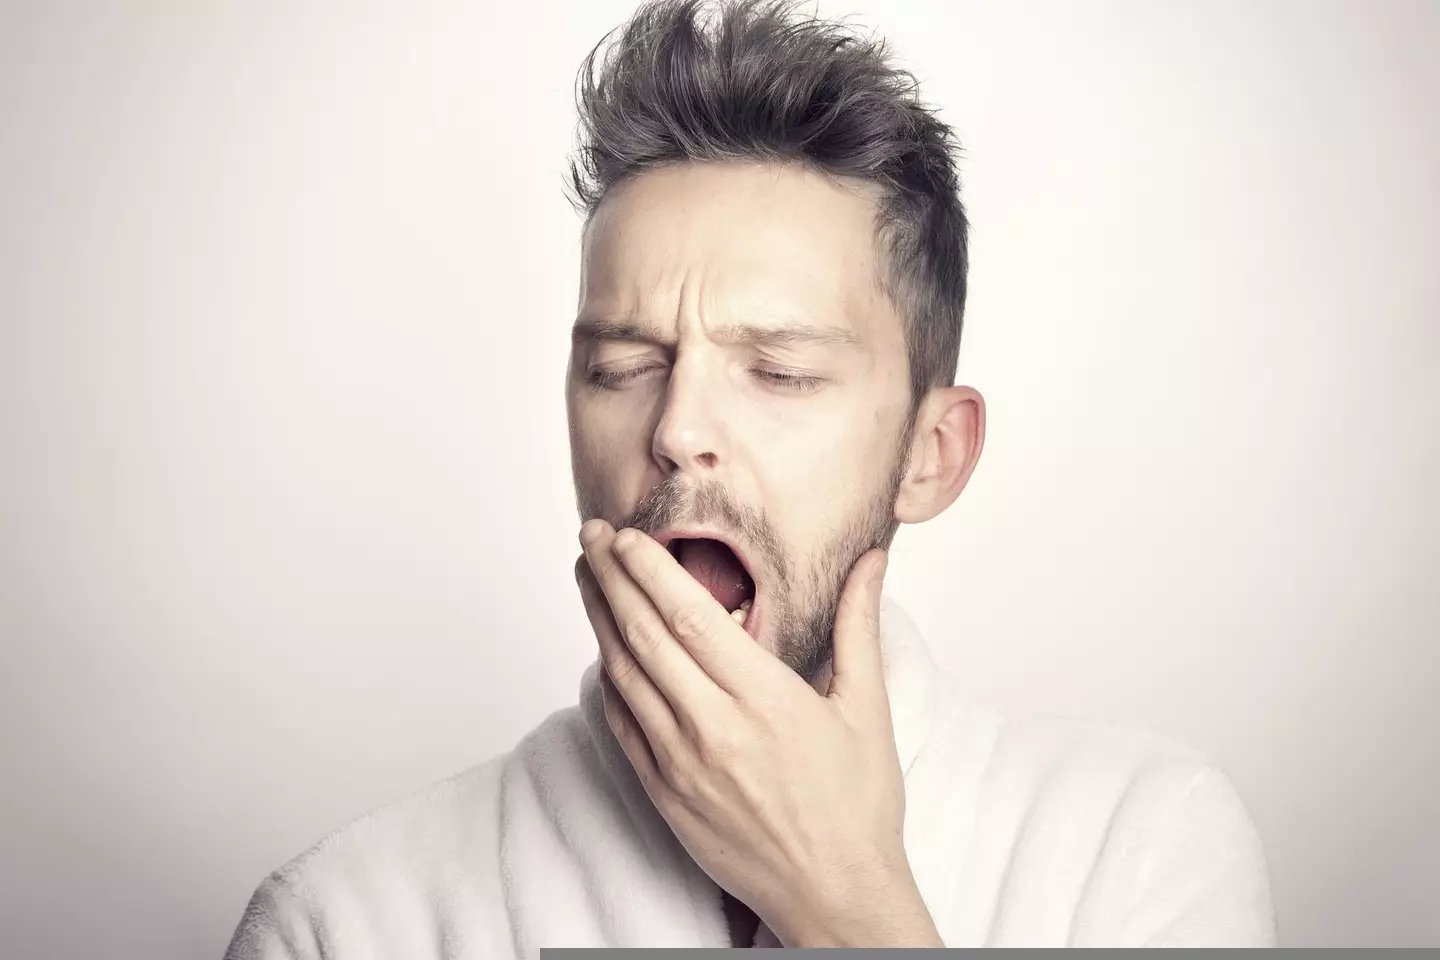 A man yawning.